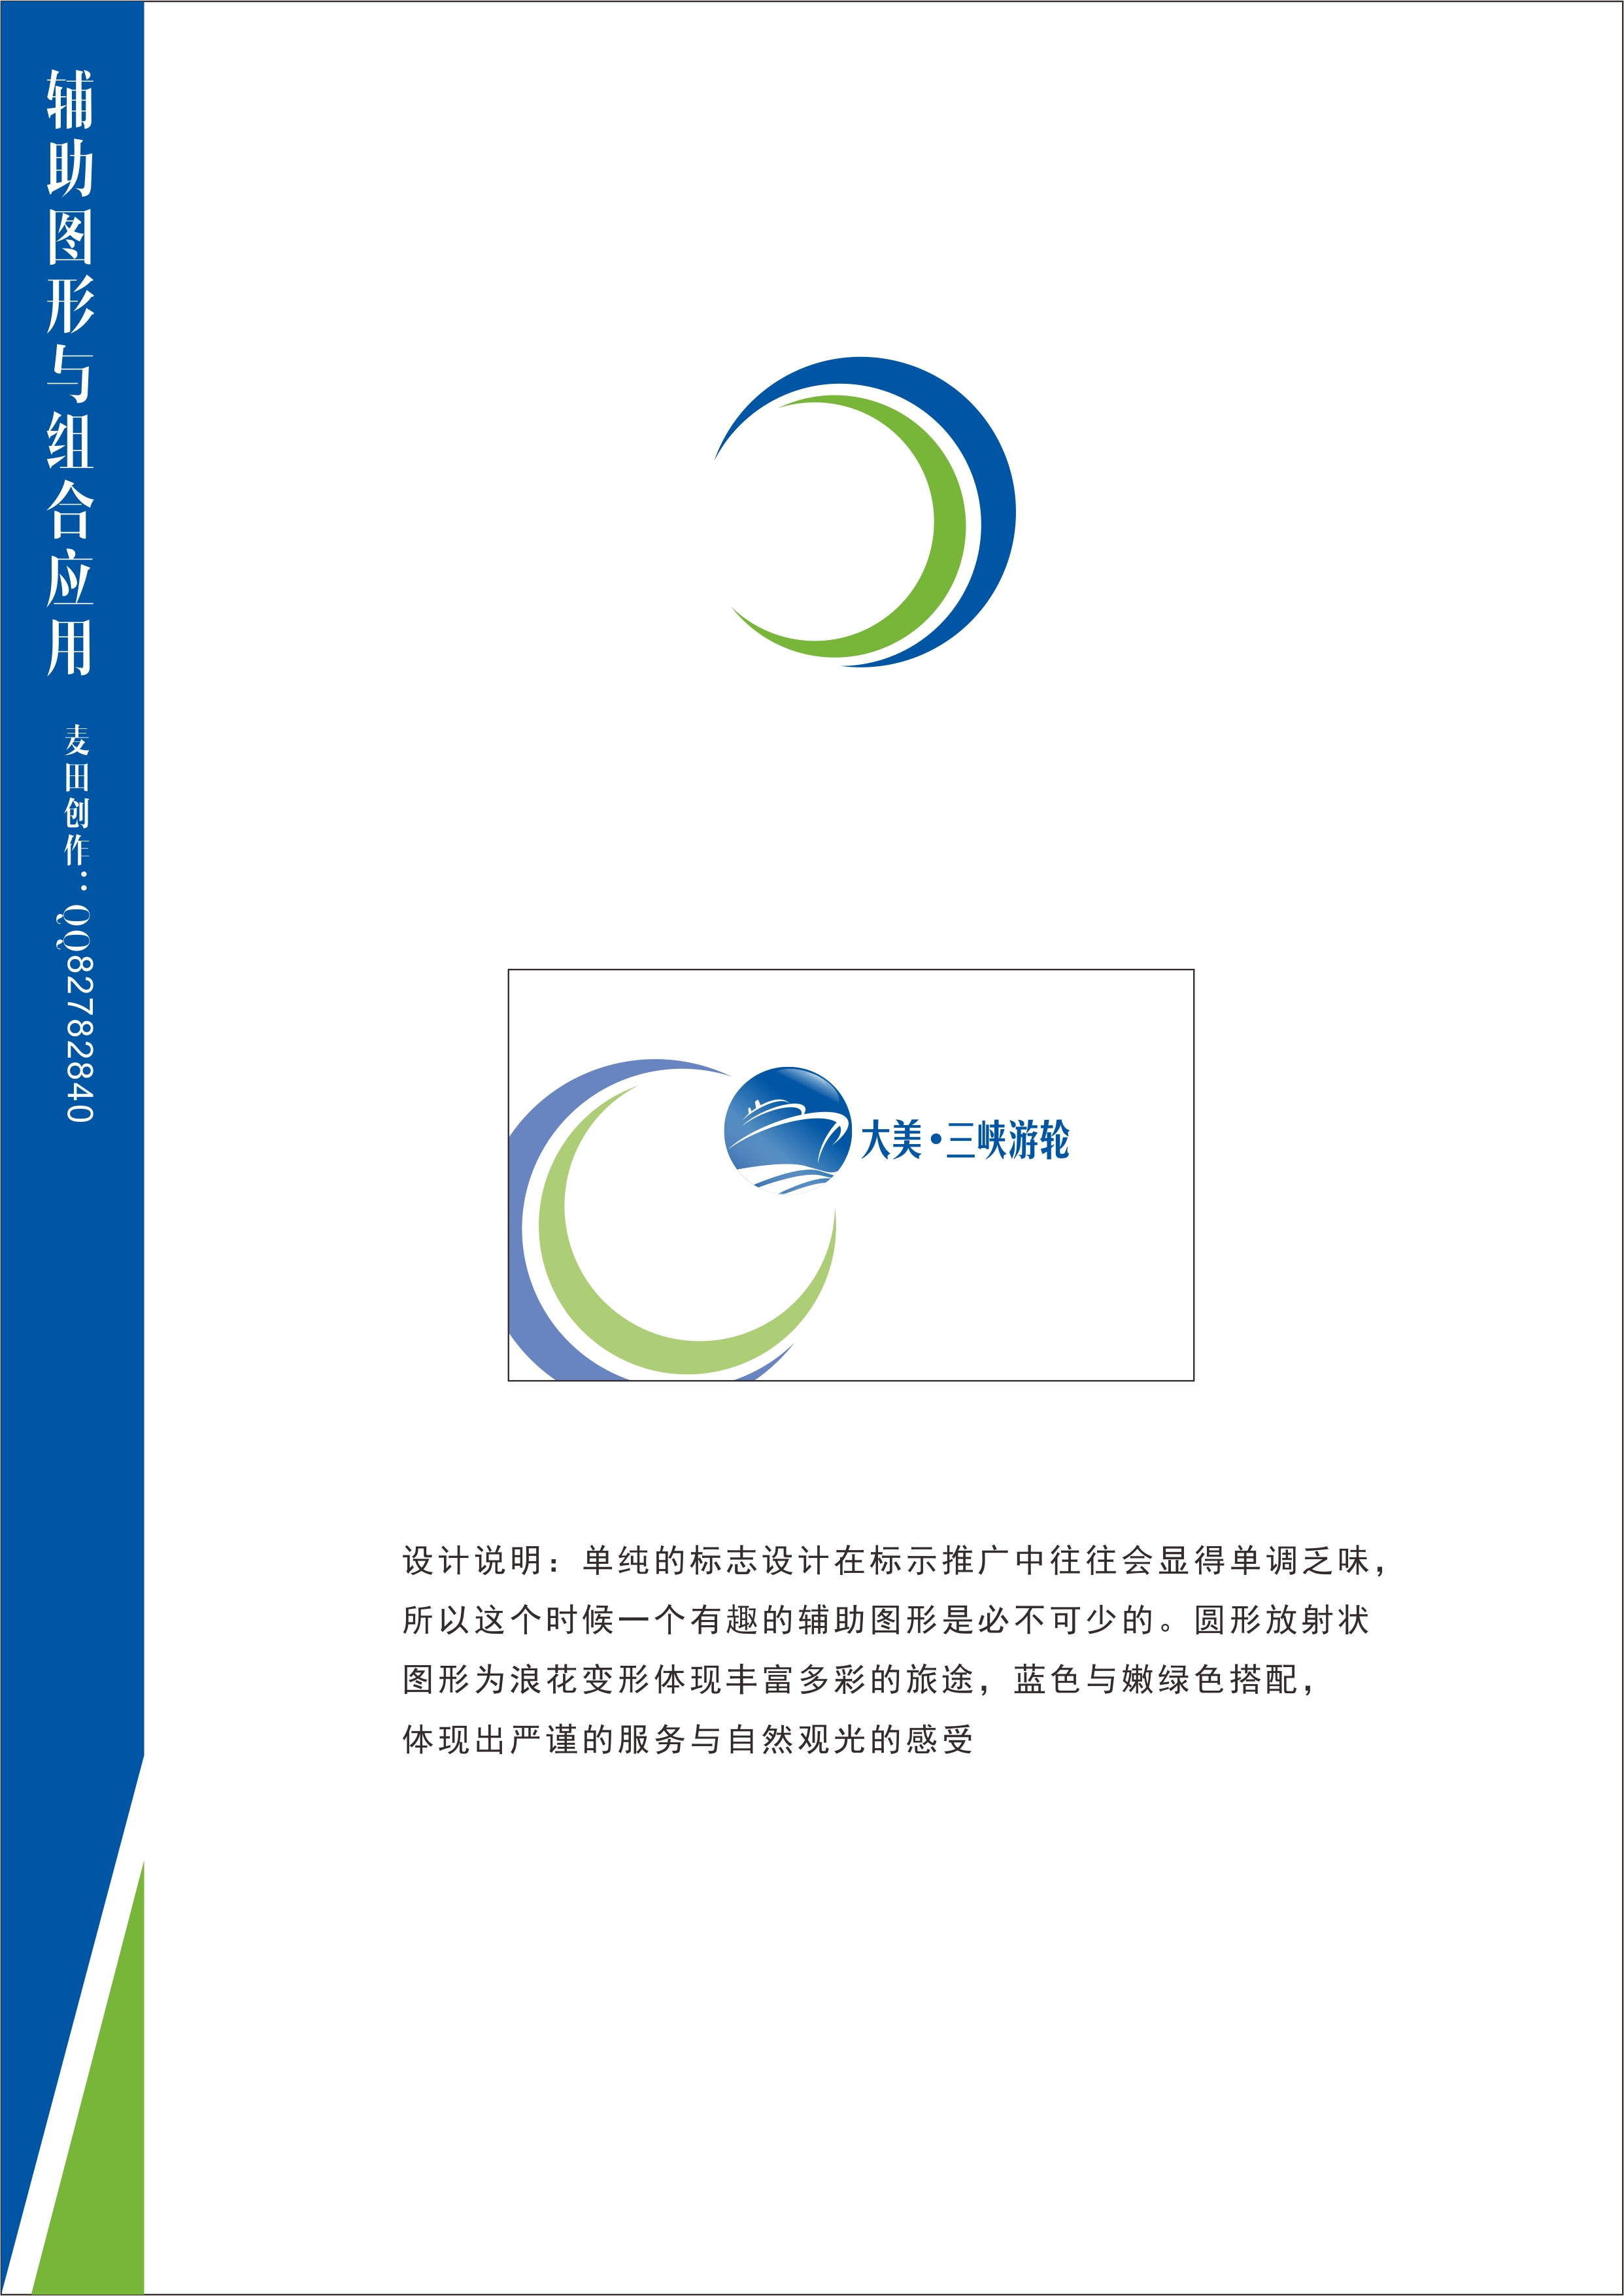 重庆大美长江三峡游轮股份有限公司logo设计